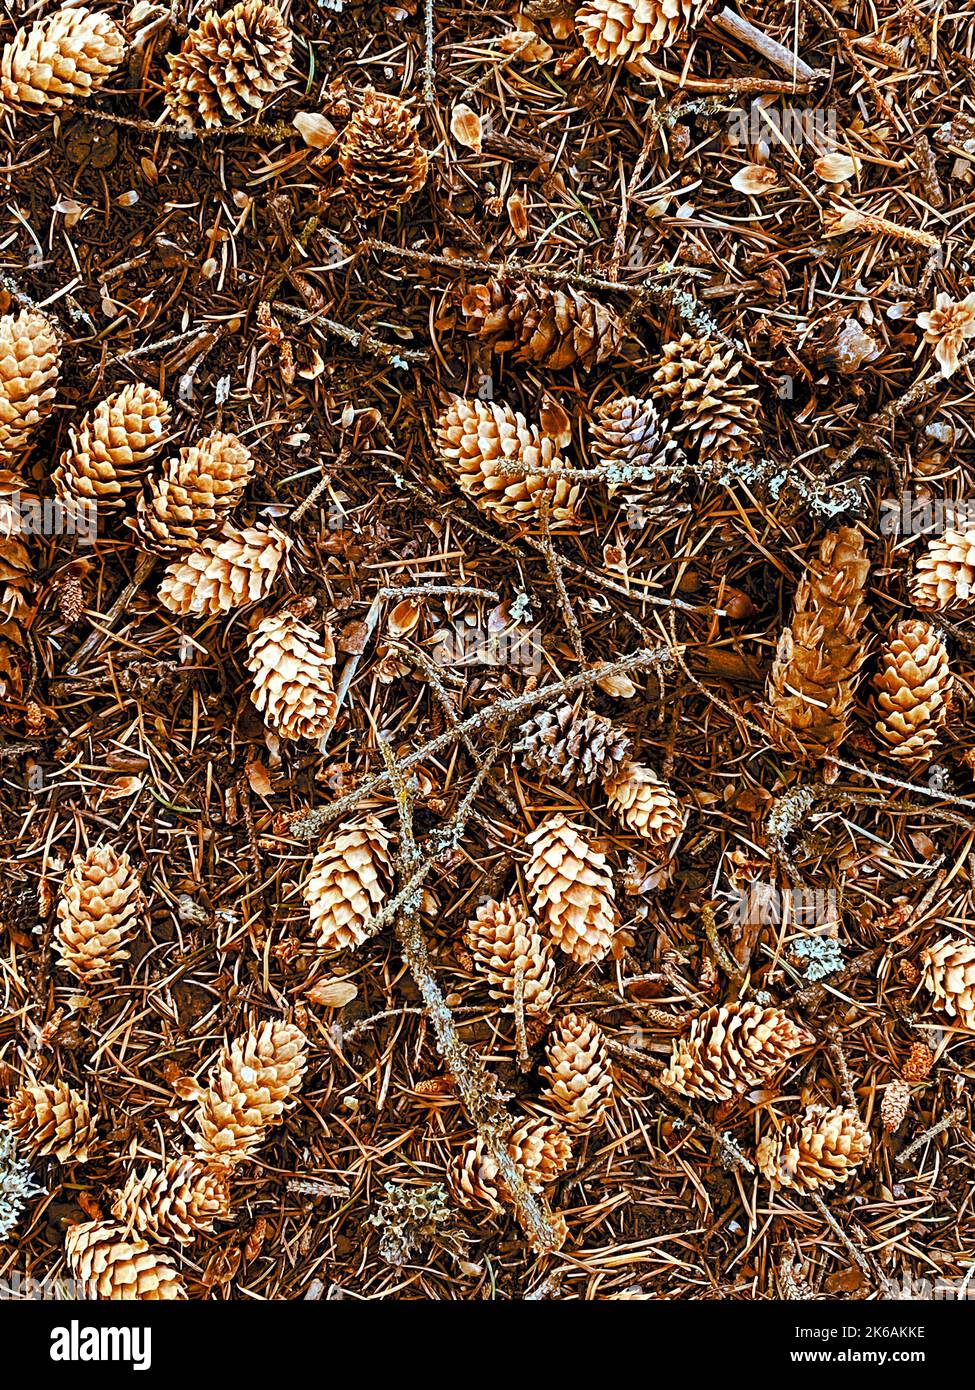 Eine Kiefer Nadeln pinecones Baum Herbst Saison Herbst pinecone trocken herbstlichen Urlaub weihnachten Jahreszeiten Gartenarbeit Bodenschutz Samen Natur Hintergrund im Freien Stockfoto